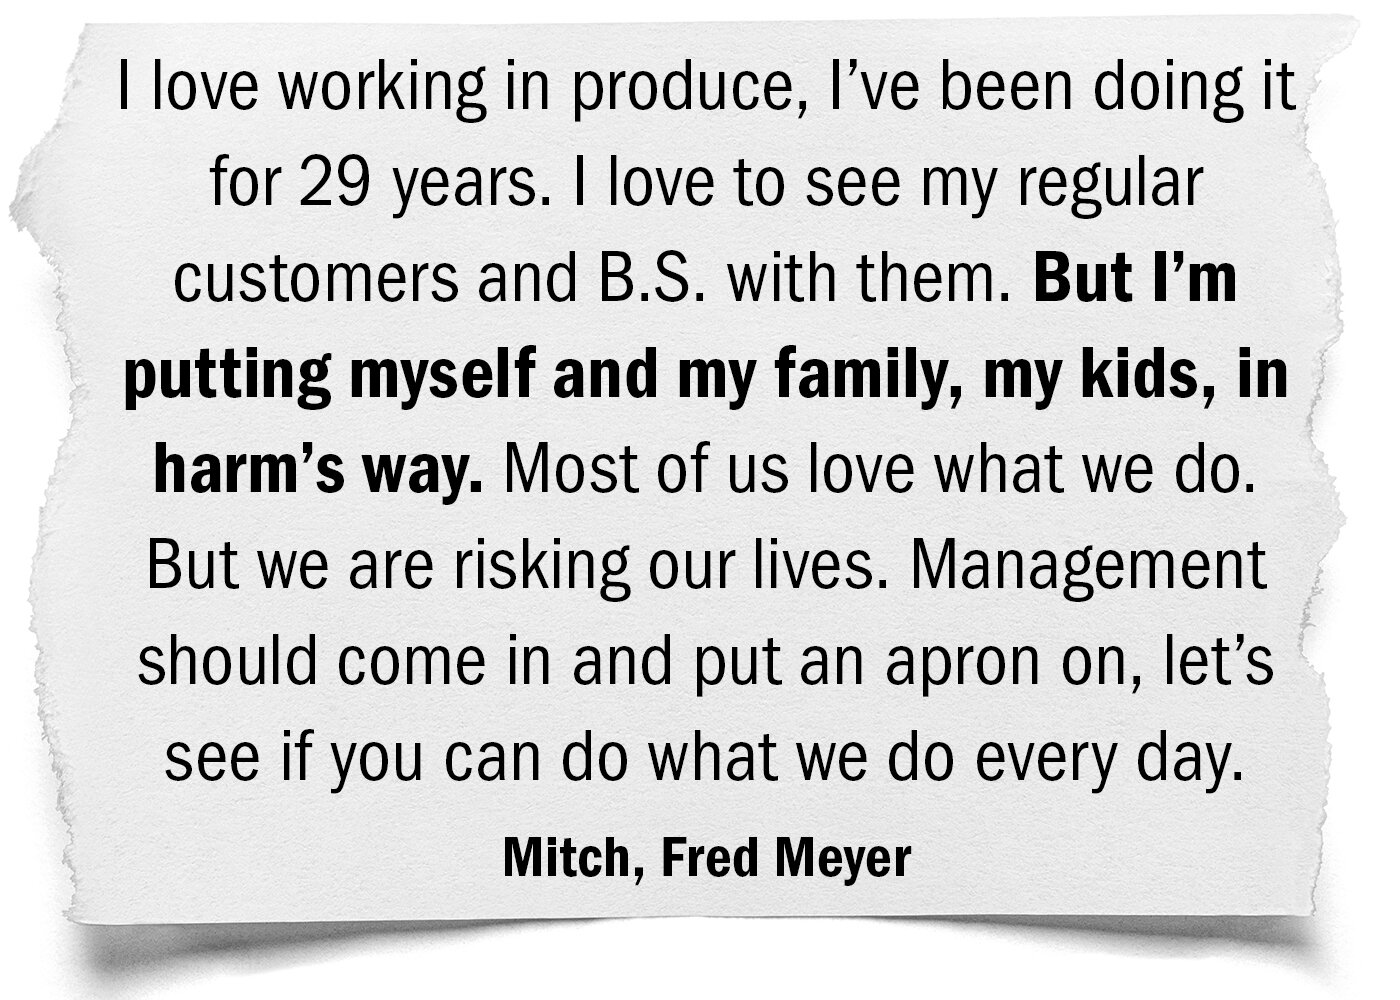 Kroger Stories Slide Show Mitch Fred Meyer.jpg